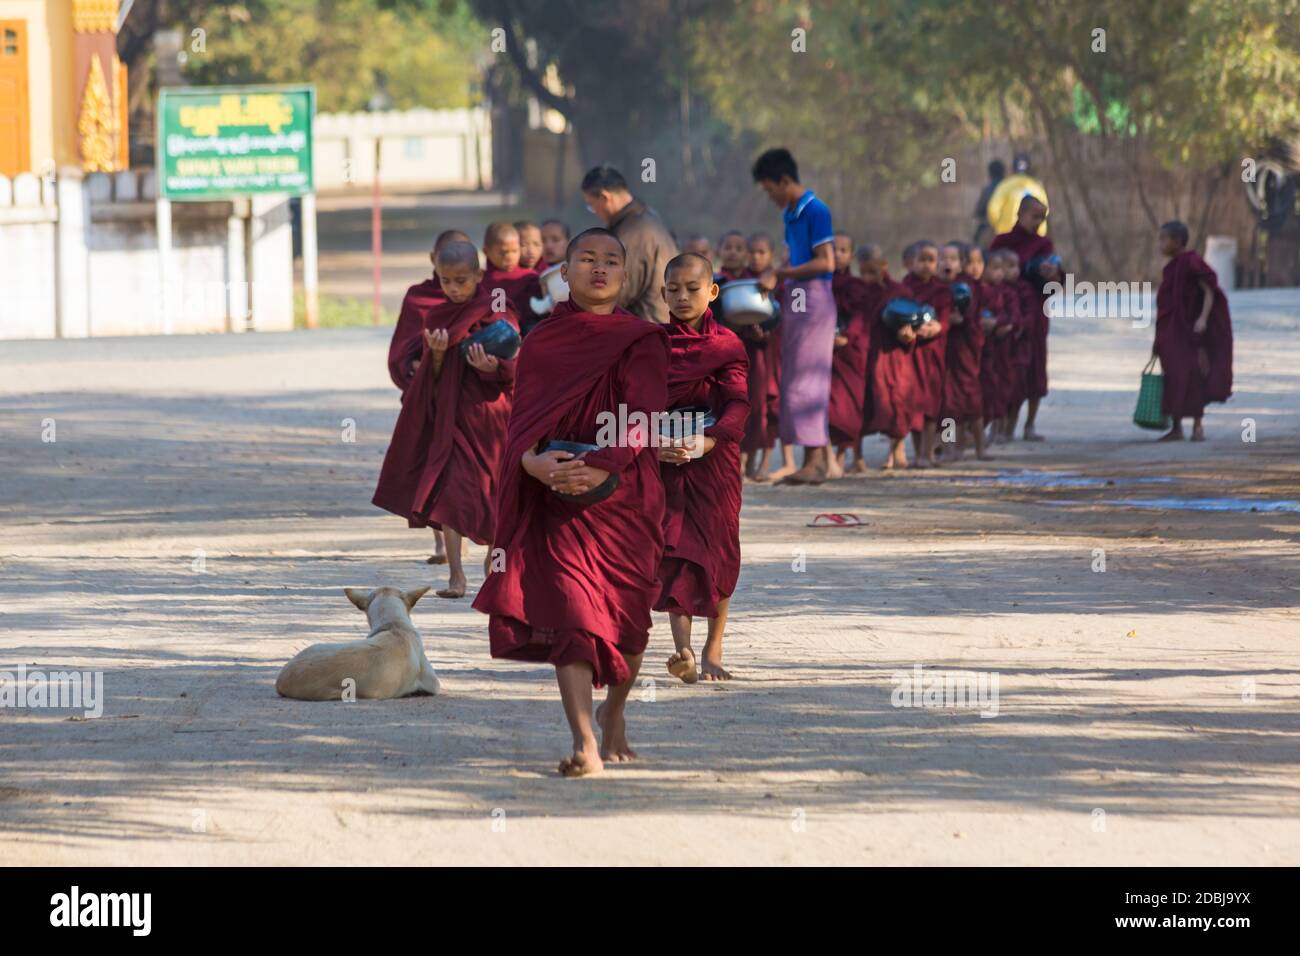 Procession de moines bouddhistes collectant des almes à Bagan, Myanmar (Birmanie), Asie en février Banque D'Images